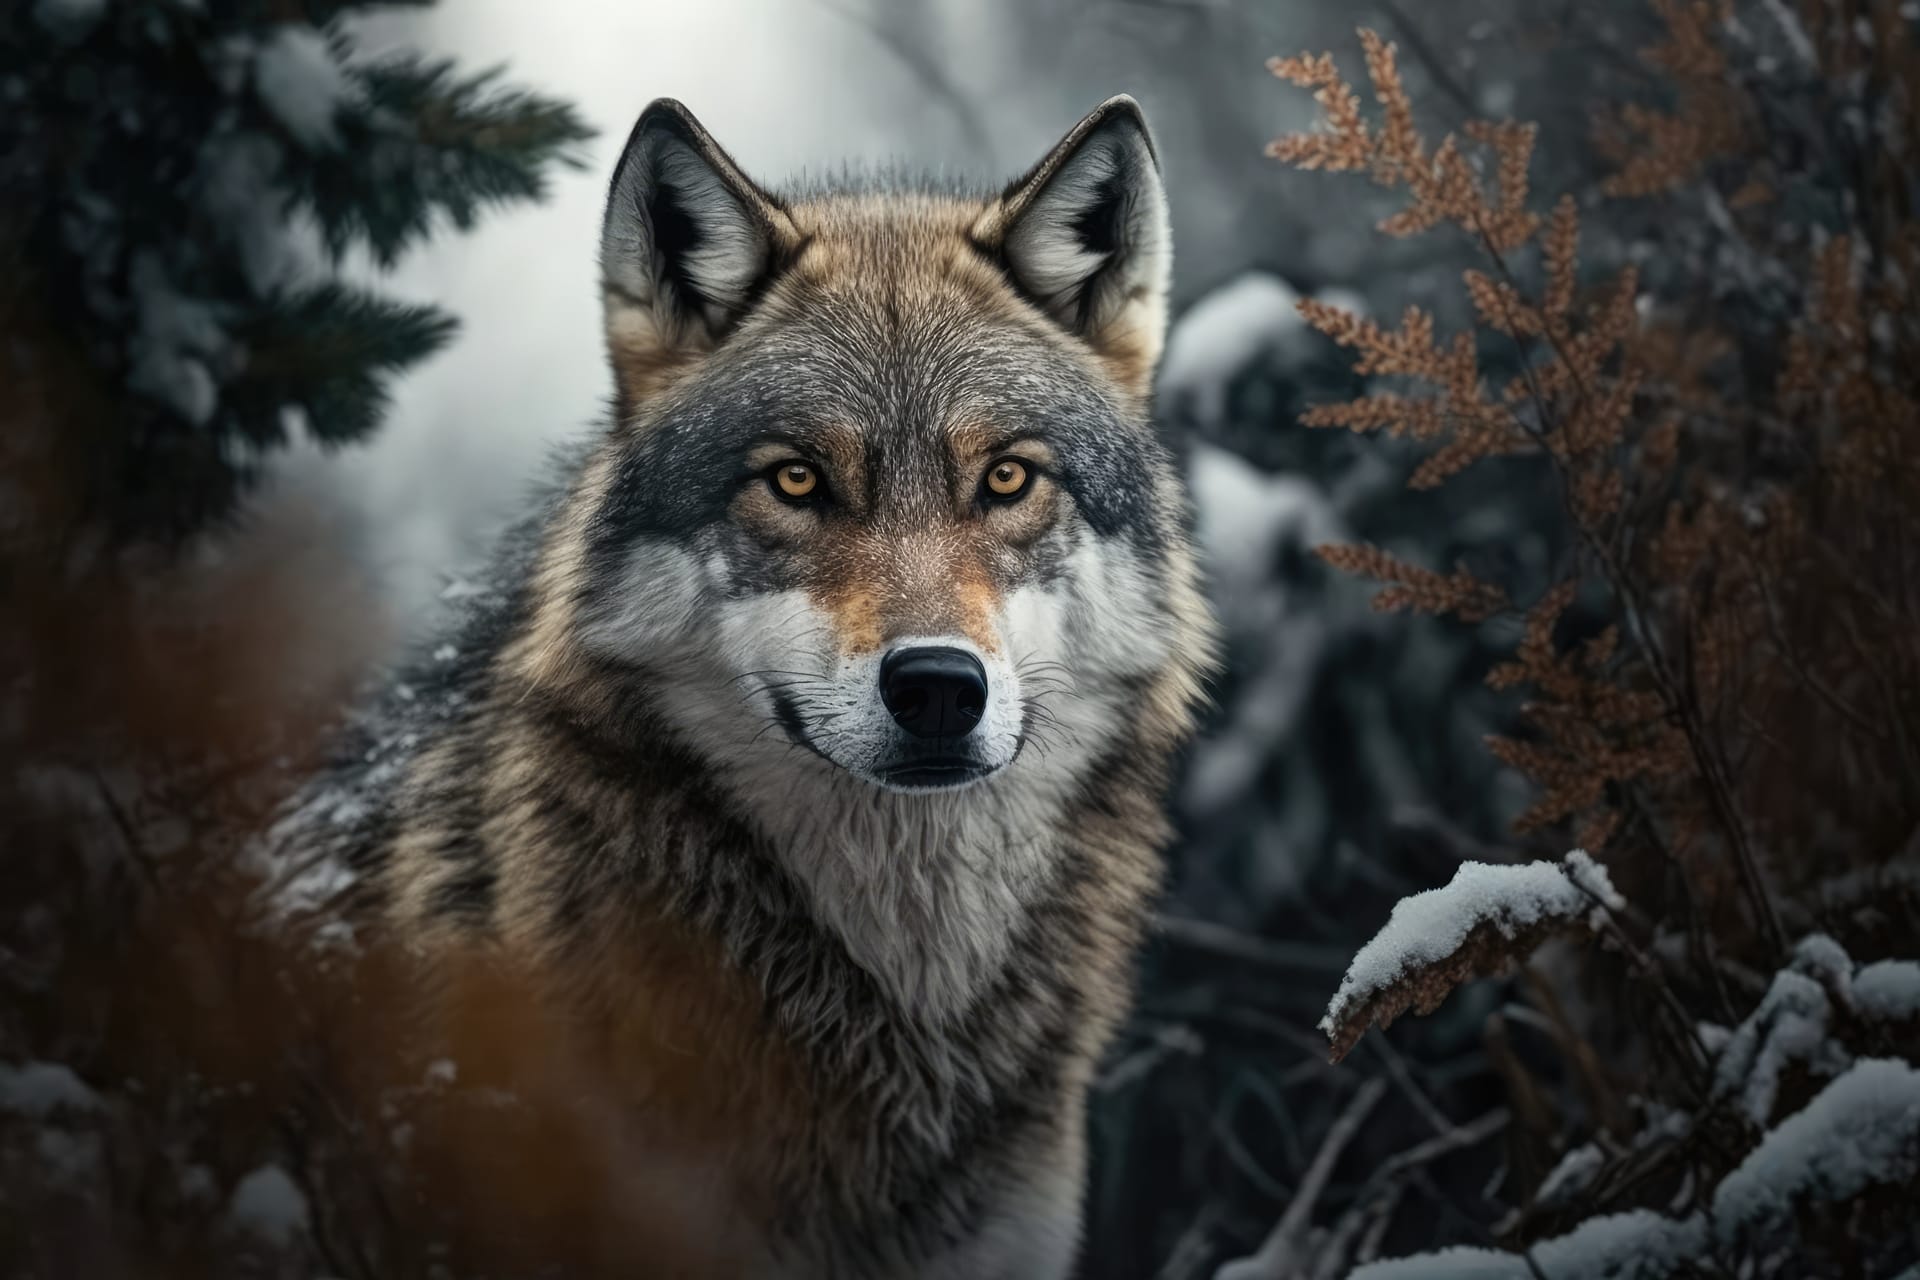 Wolf close up forest winter scene wildlife wild natural home wild animal